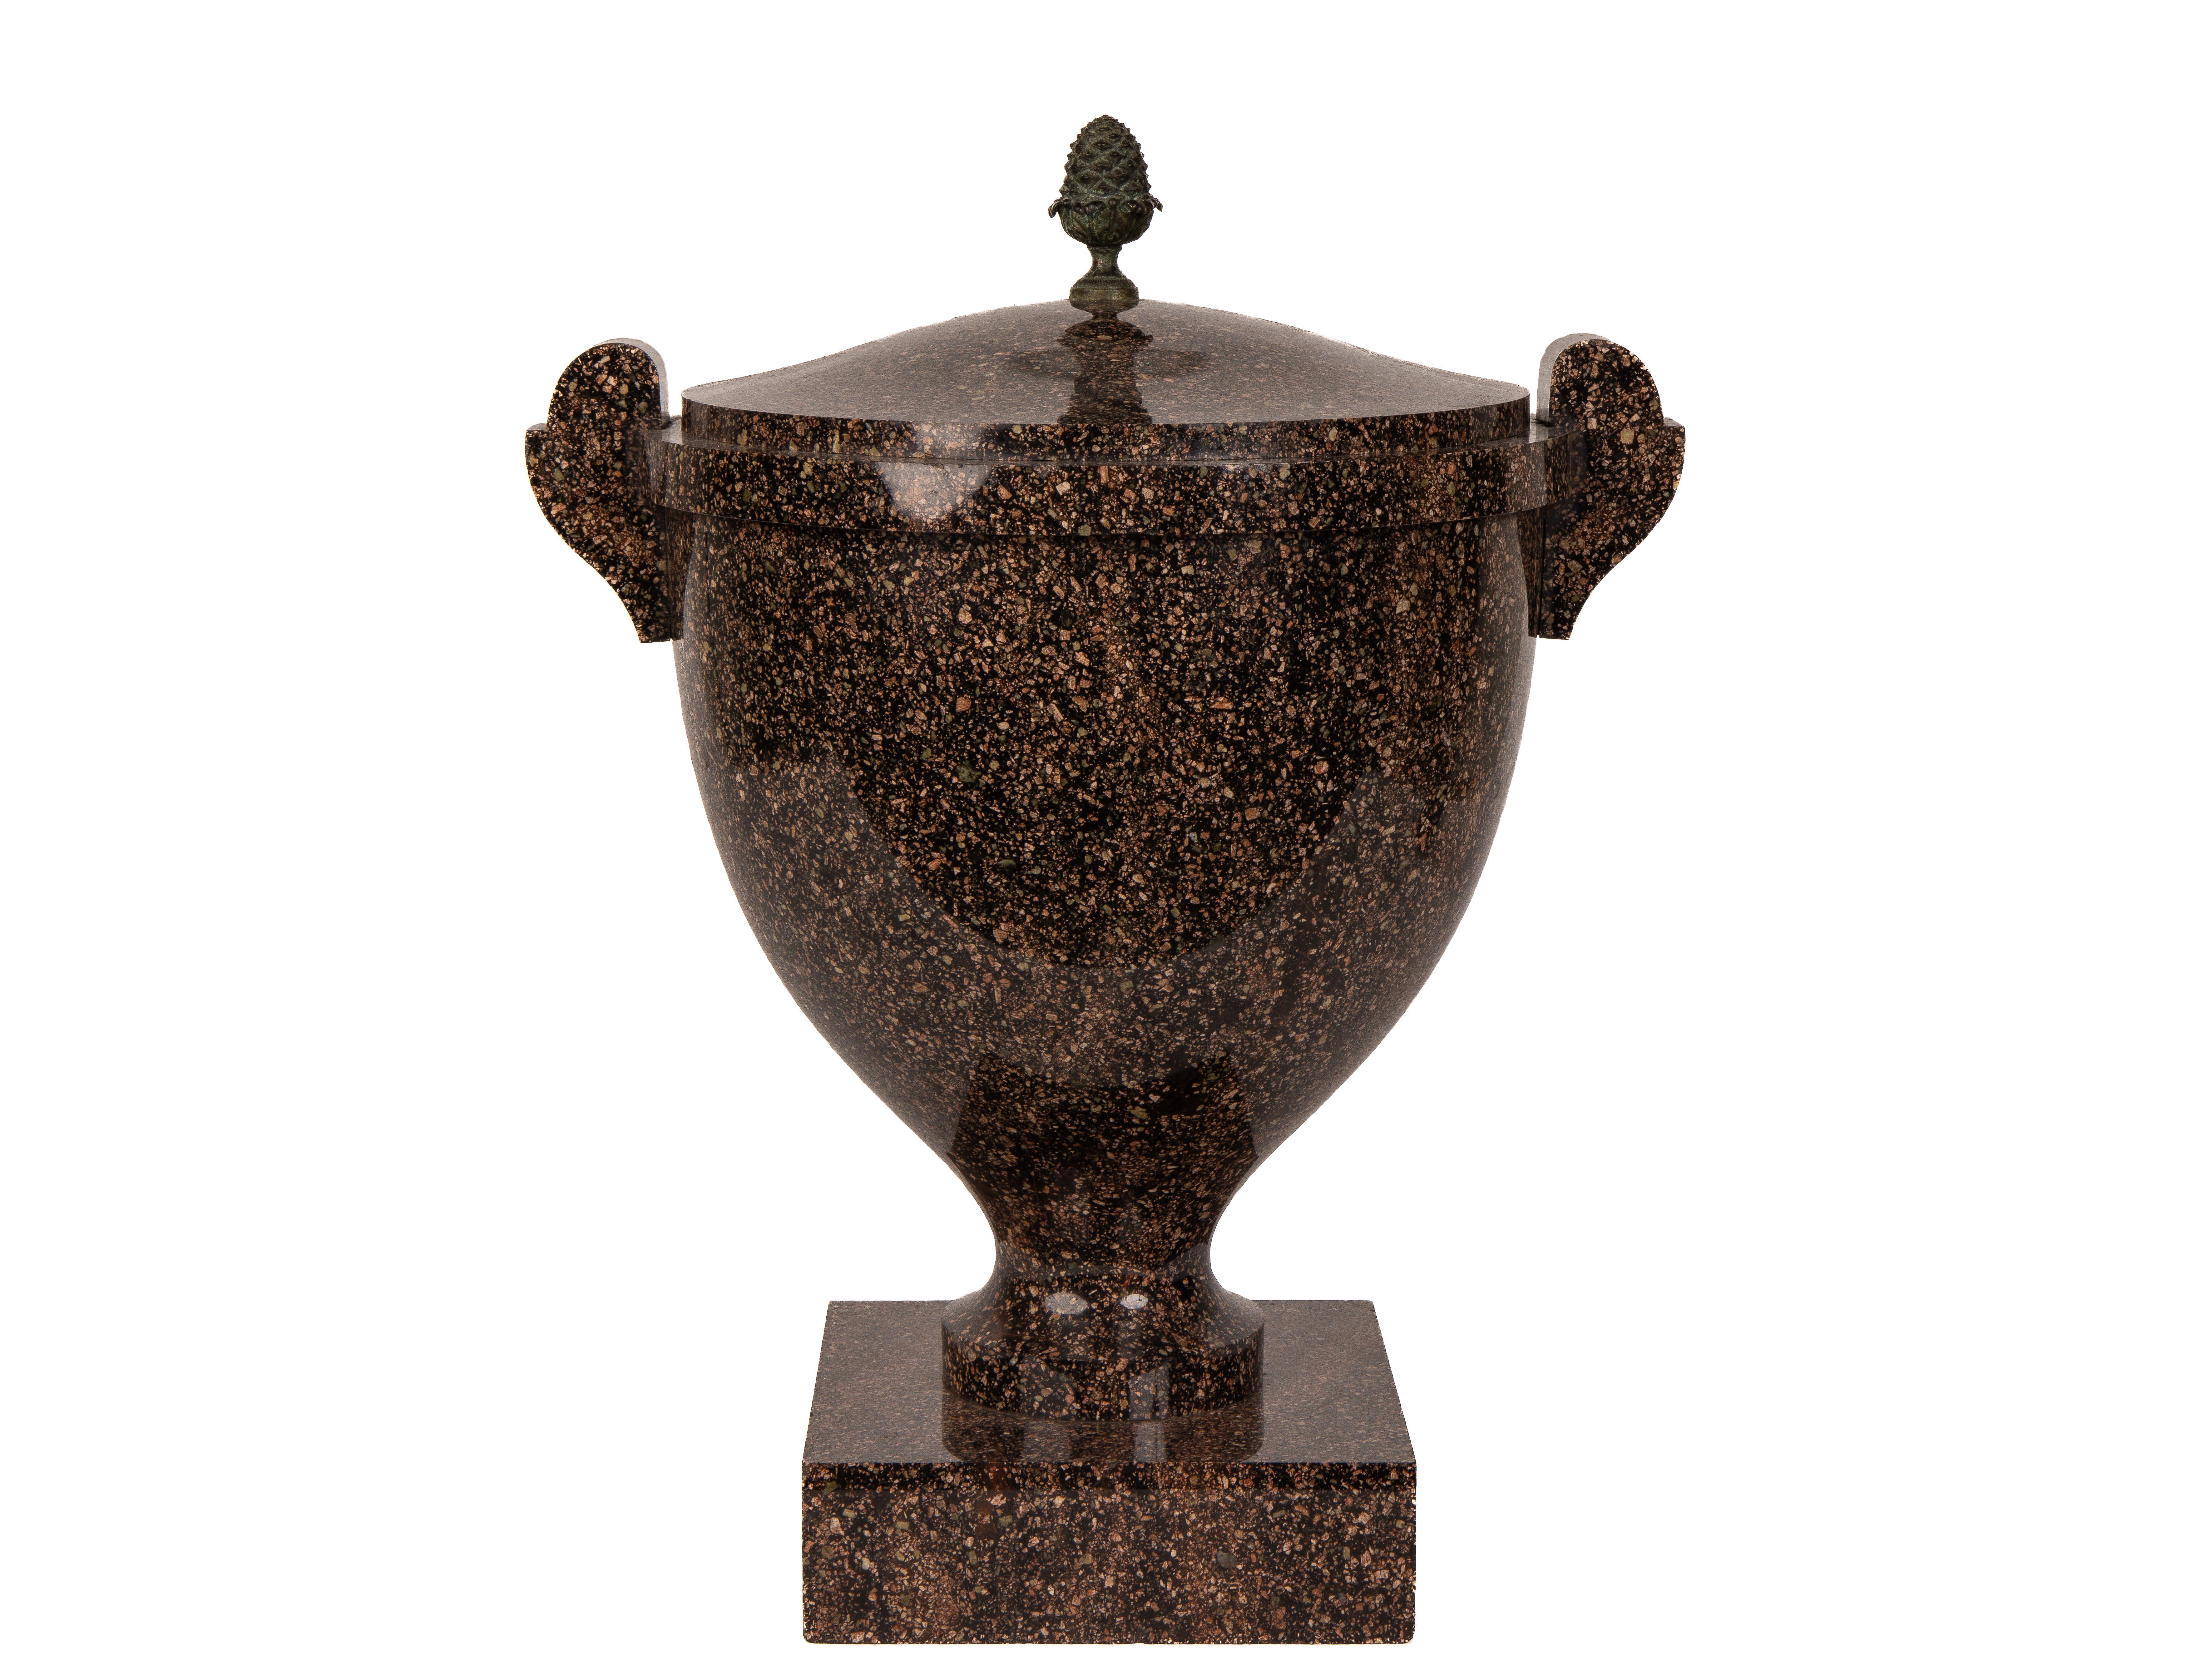 Ein großes Paar schwedischer neoklassizistischer Blyberg-Porphyr-Vasen und Deckel, frühes 19. Jahrhundert, auf quadratischen Sockeln, mit bronzenen Ananas-Finials an den Deckeln.

Diese majestätischen Vasen aus massivem Porphyrgestein sind